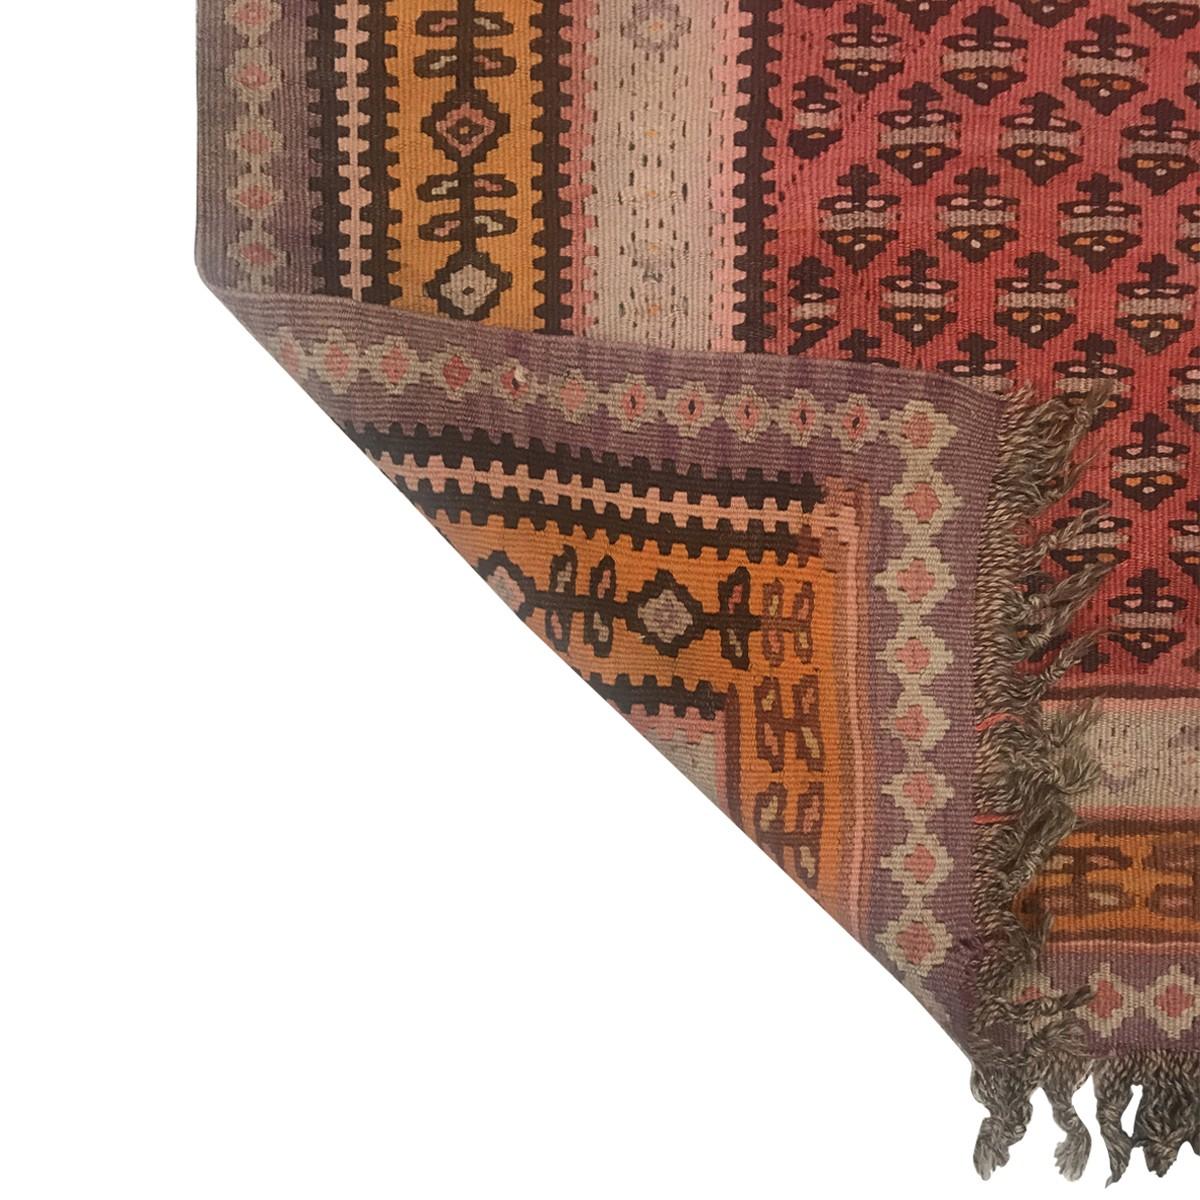 Einzigartige alte und antike Ghelims-Teppiche aus Afghanistan, der Türkei, Iran, Ost- und Zentralasien. Diese historischen Teppiche, die zwischen 1890 und 1950 gewebt wurden, haben neben ihren Übergangs- und Stammesmustern auch eine zeitgenössische